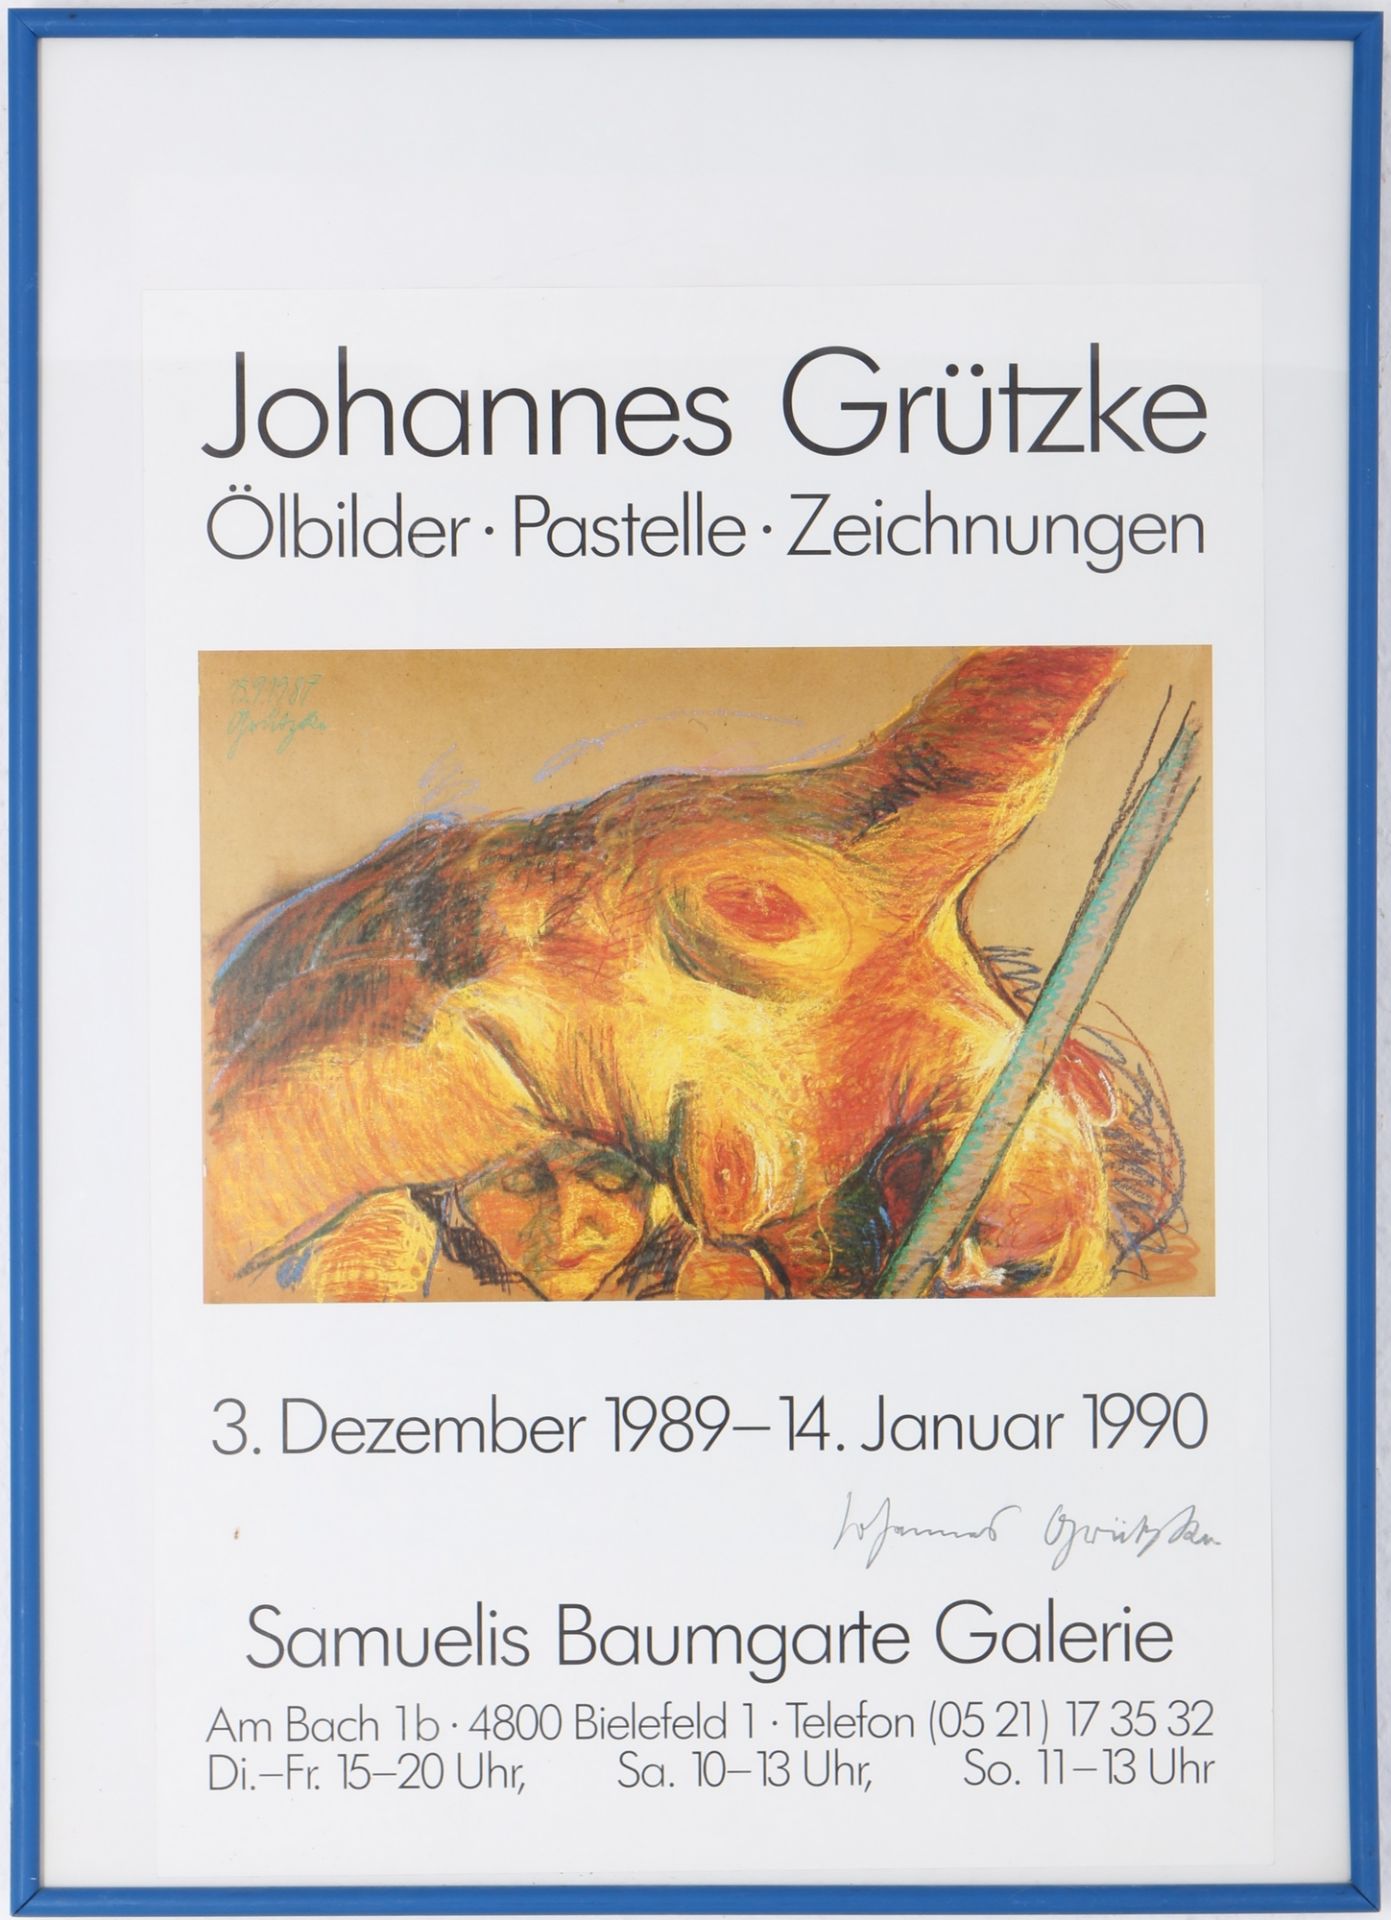 Johannes Grützke (1937-2017) signiertes Ausstellungsplakat 1989-1990 Samuelis Baumgarte Galerie,